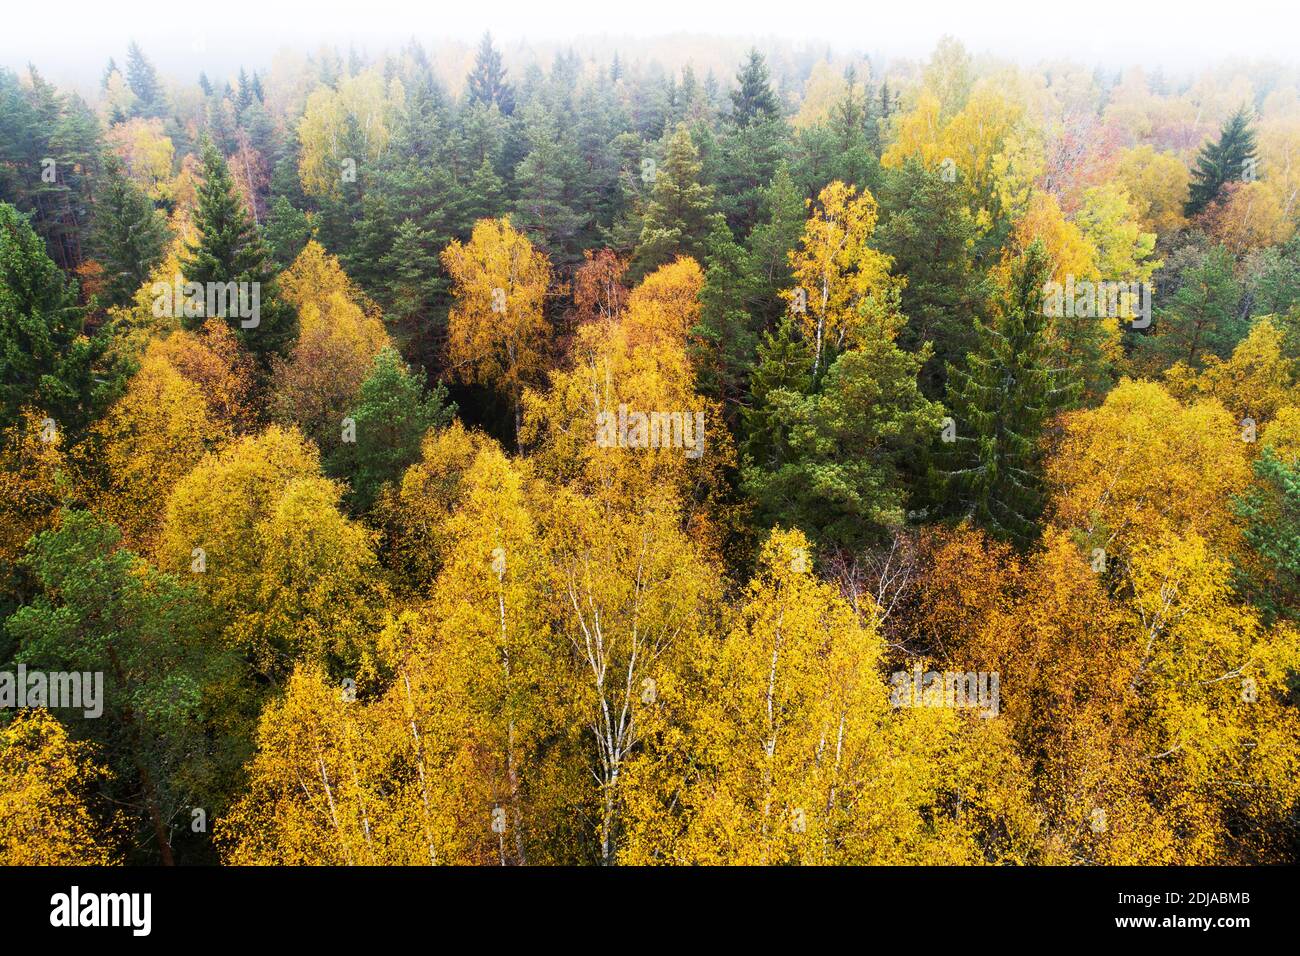 Vue aérienne de la forêt boréale sauvage luxuriante pendant le feuillage d'automne coloré dans la nature européenne. Banque D'Images